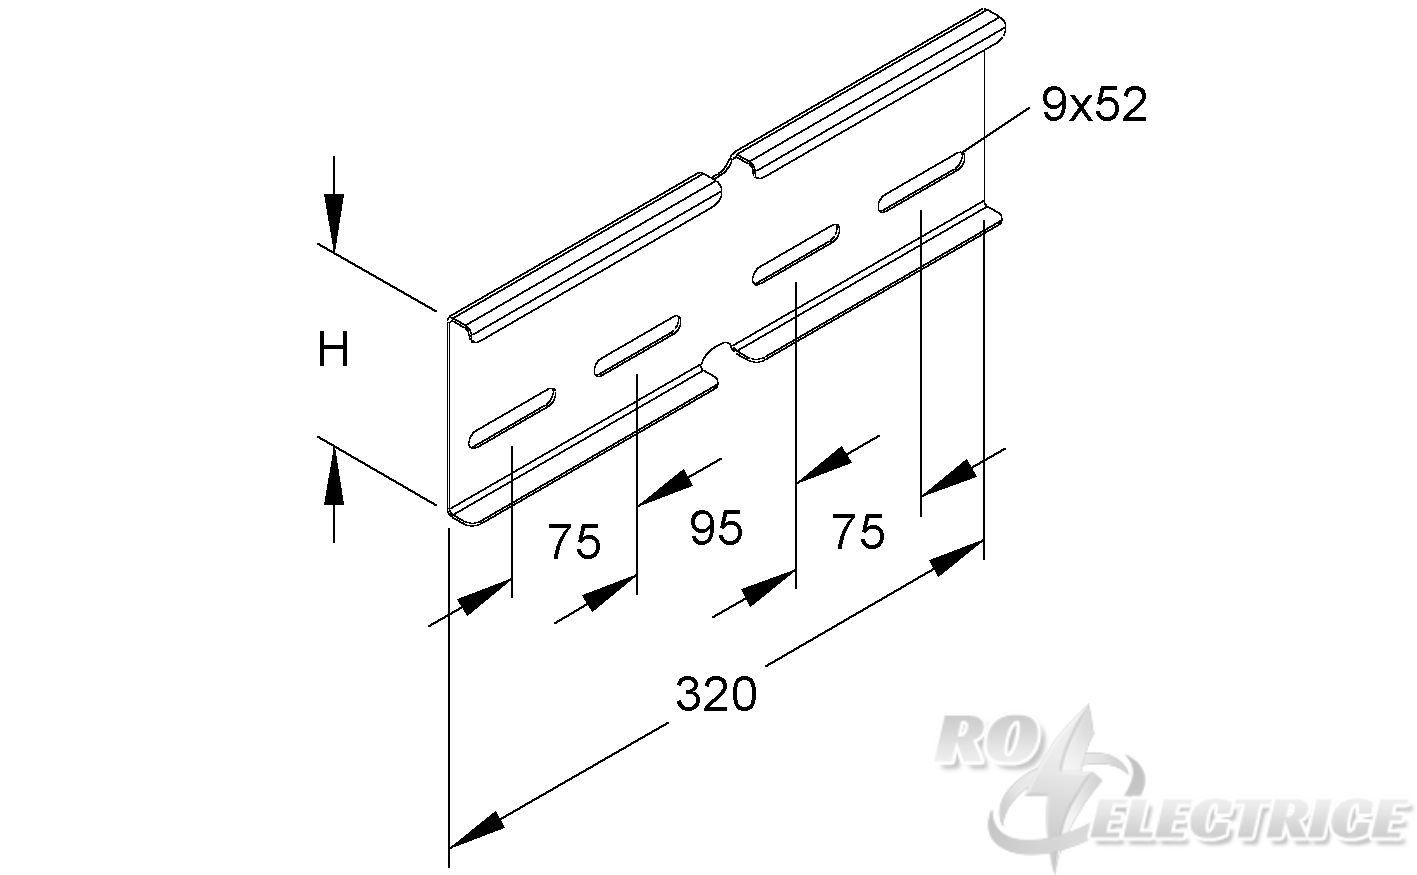 Winkelverbinder für KL, horizontal, Höhe 100 mm, Stahl, feuerverzinkt DIN EN ISO 1461, inkl. Zubehör